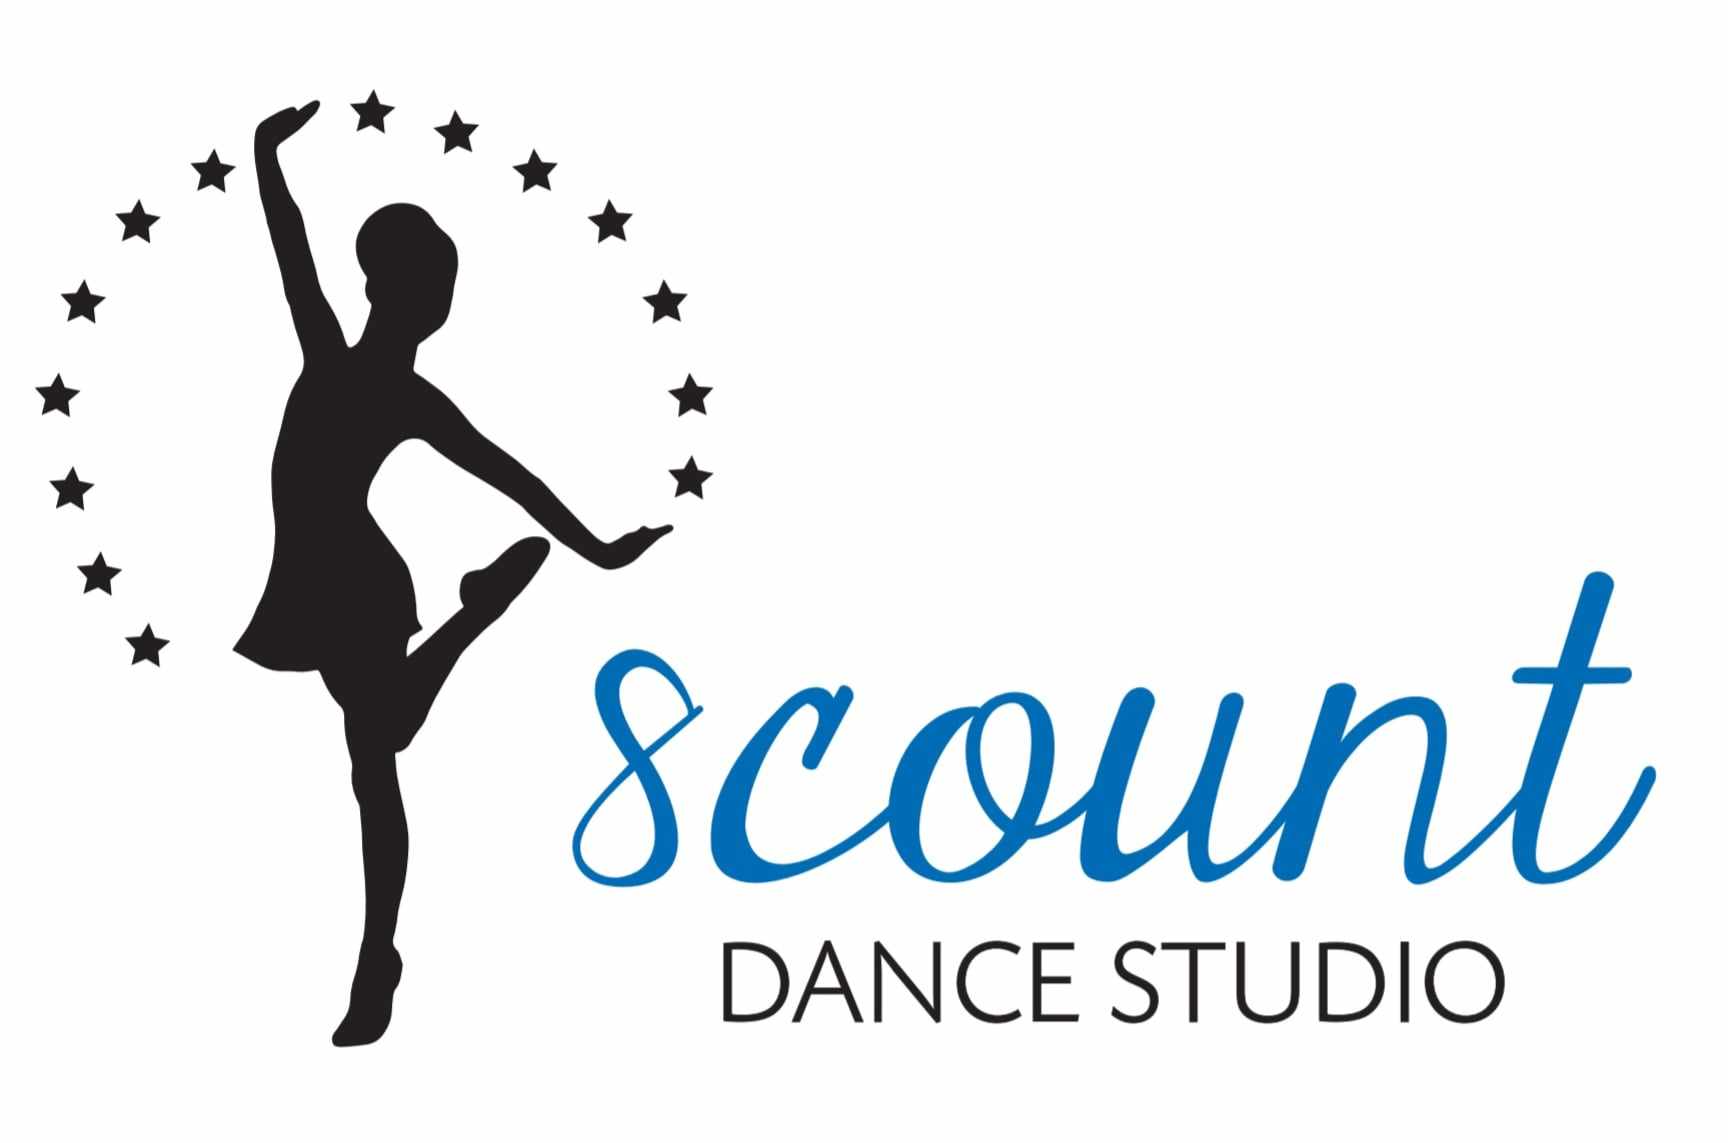 8Count Dance School